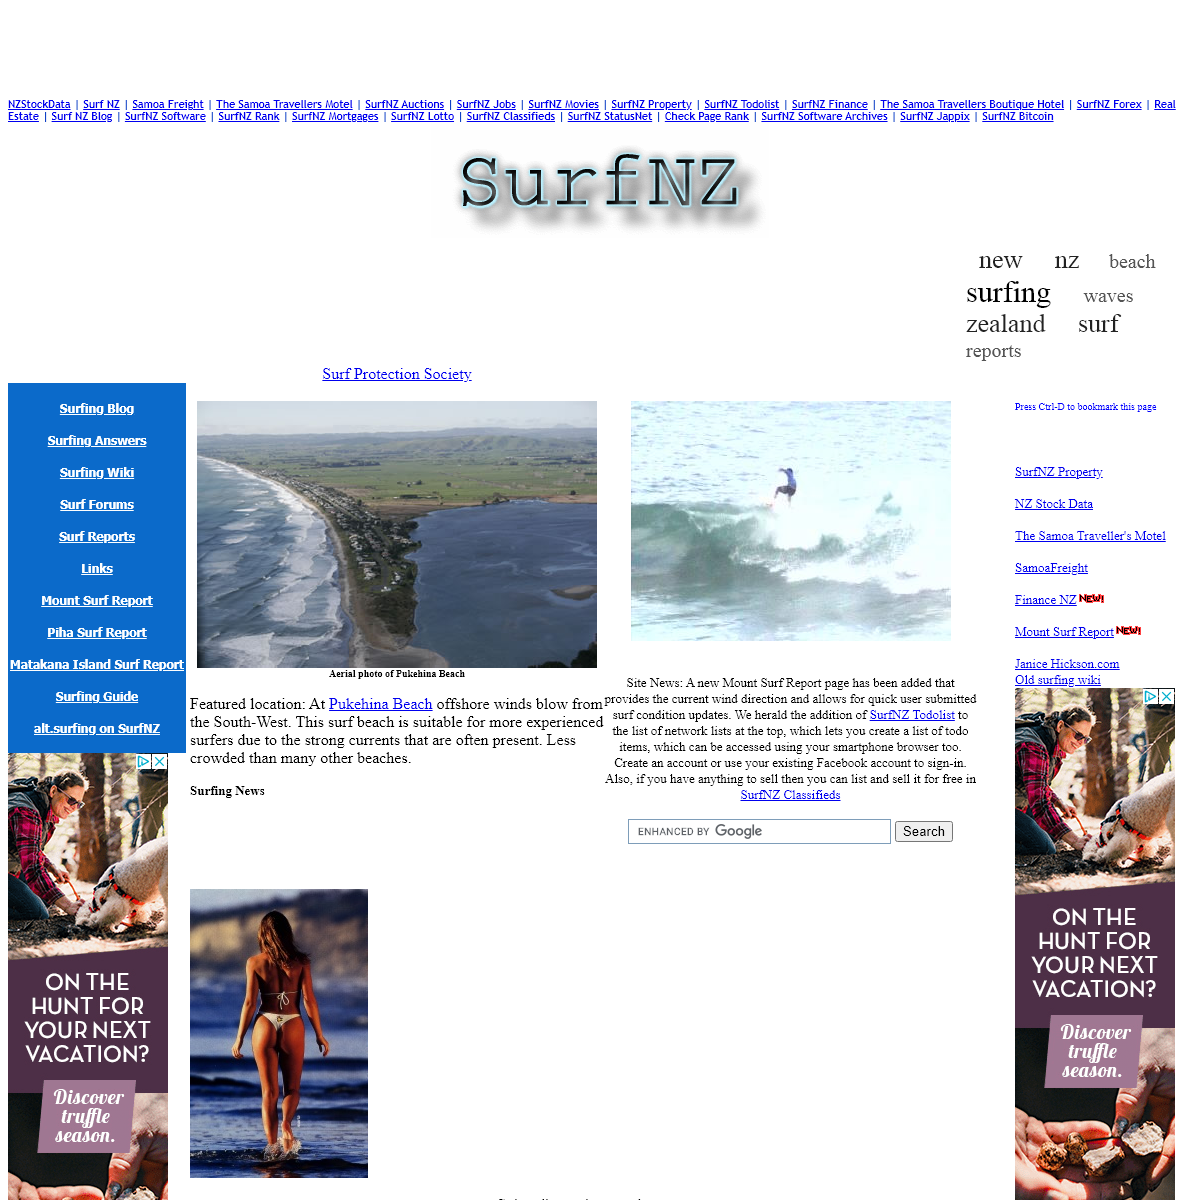 A complete backup of surfnz.com